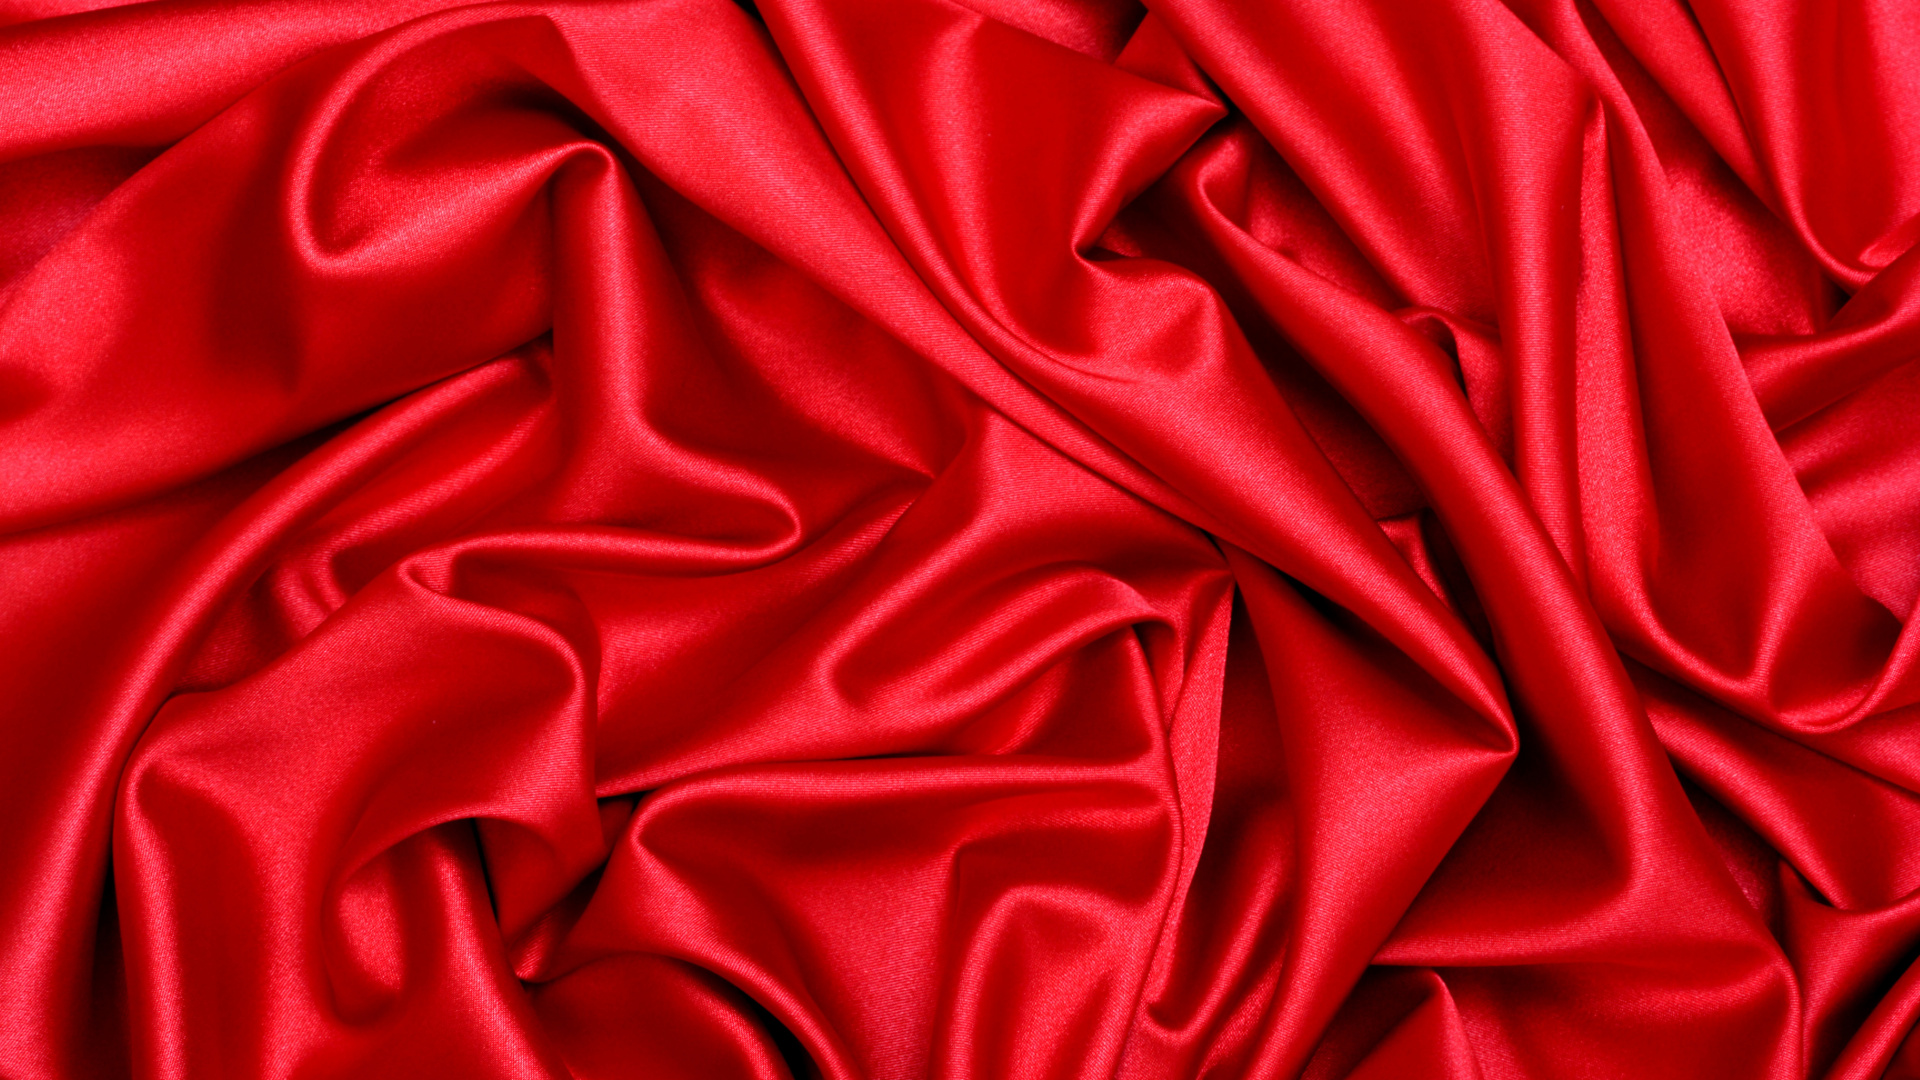 Textil Rojo en Fotografía de Cerca. Wallpaper in 1920x1080 Resolution